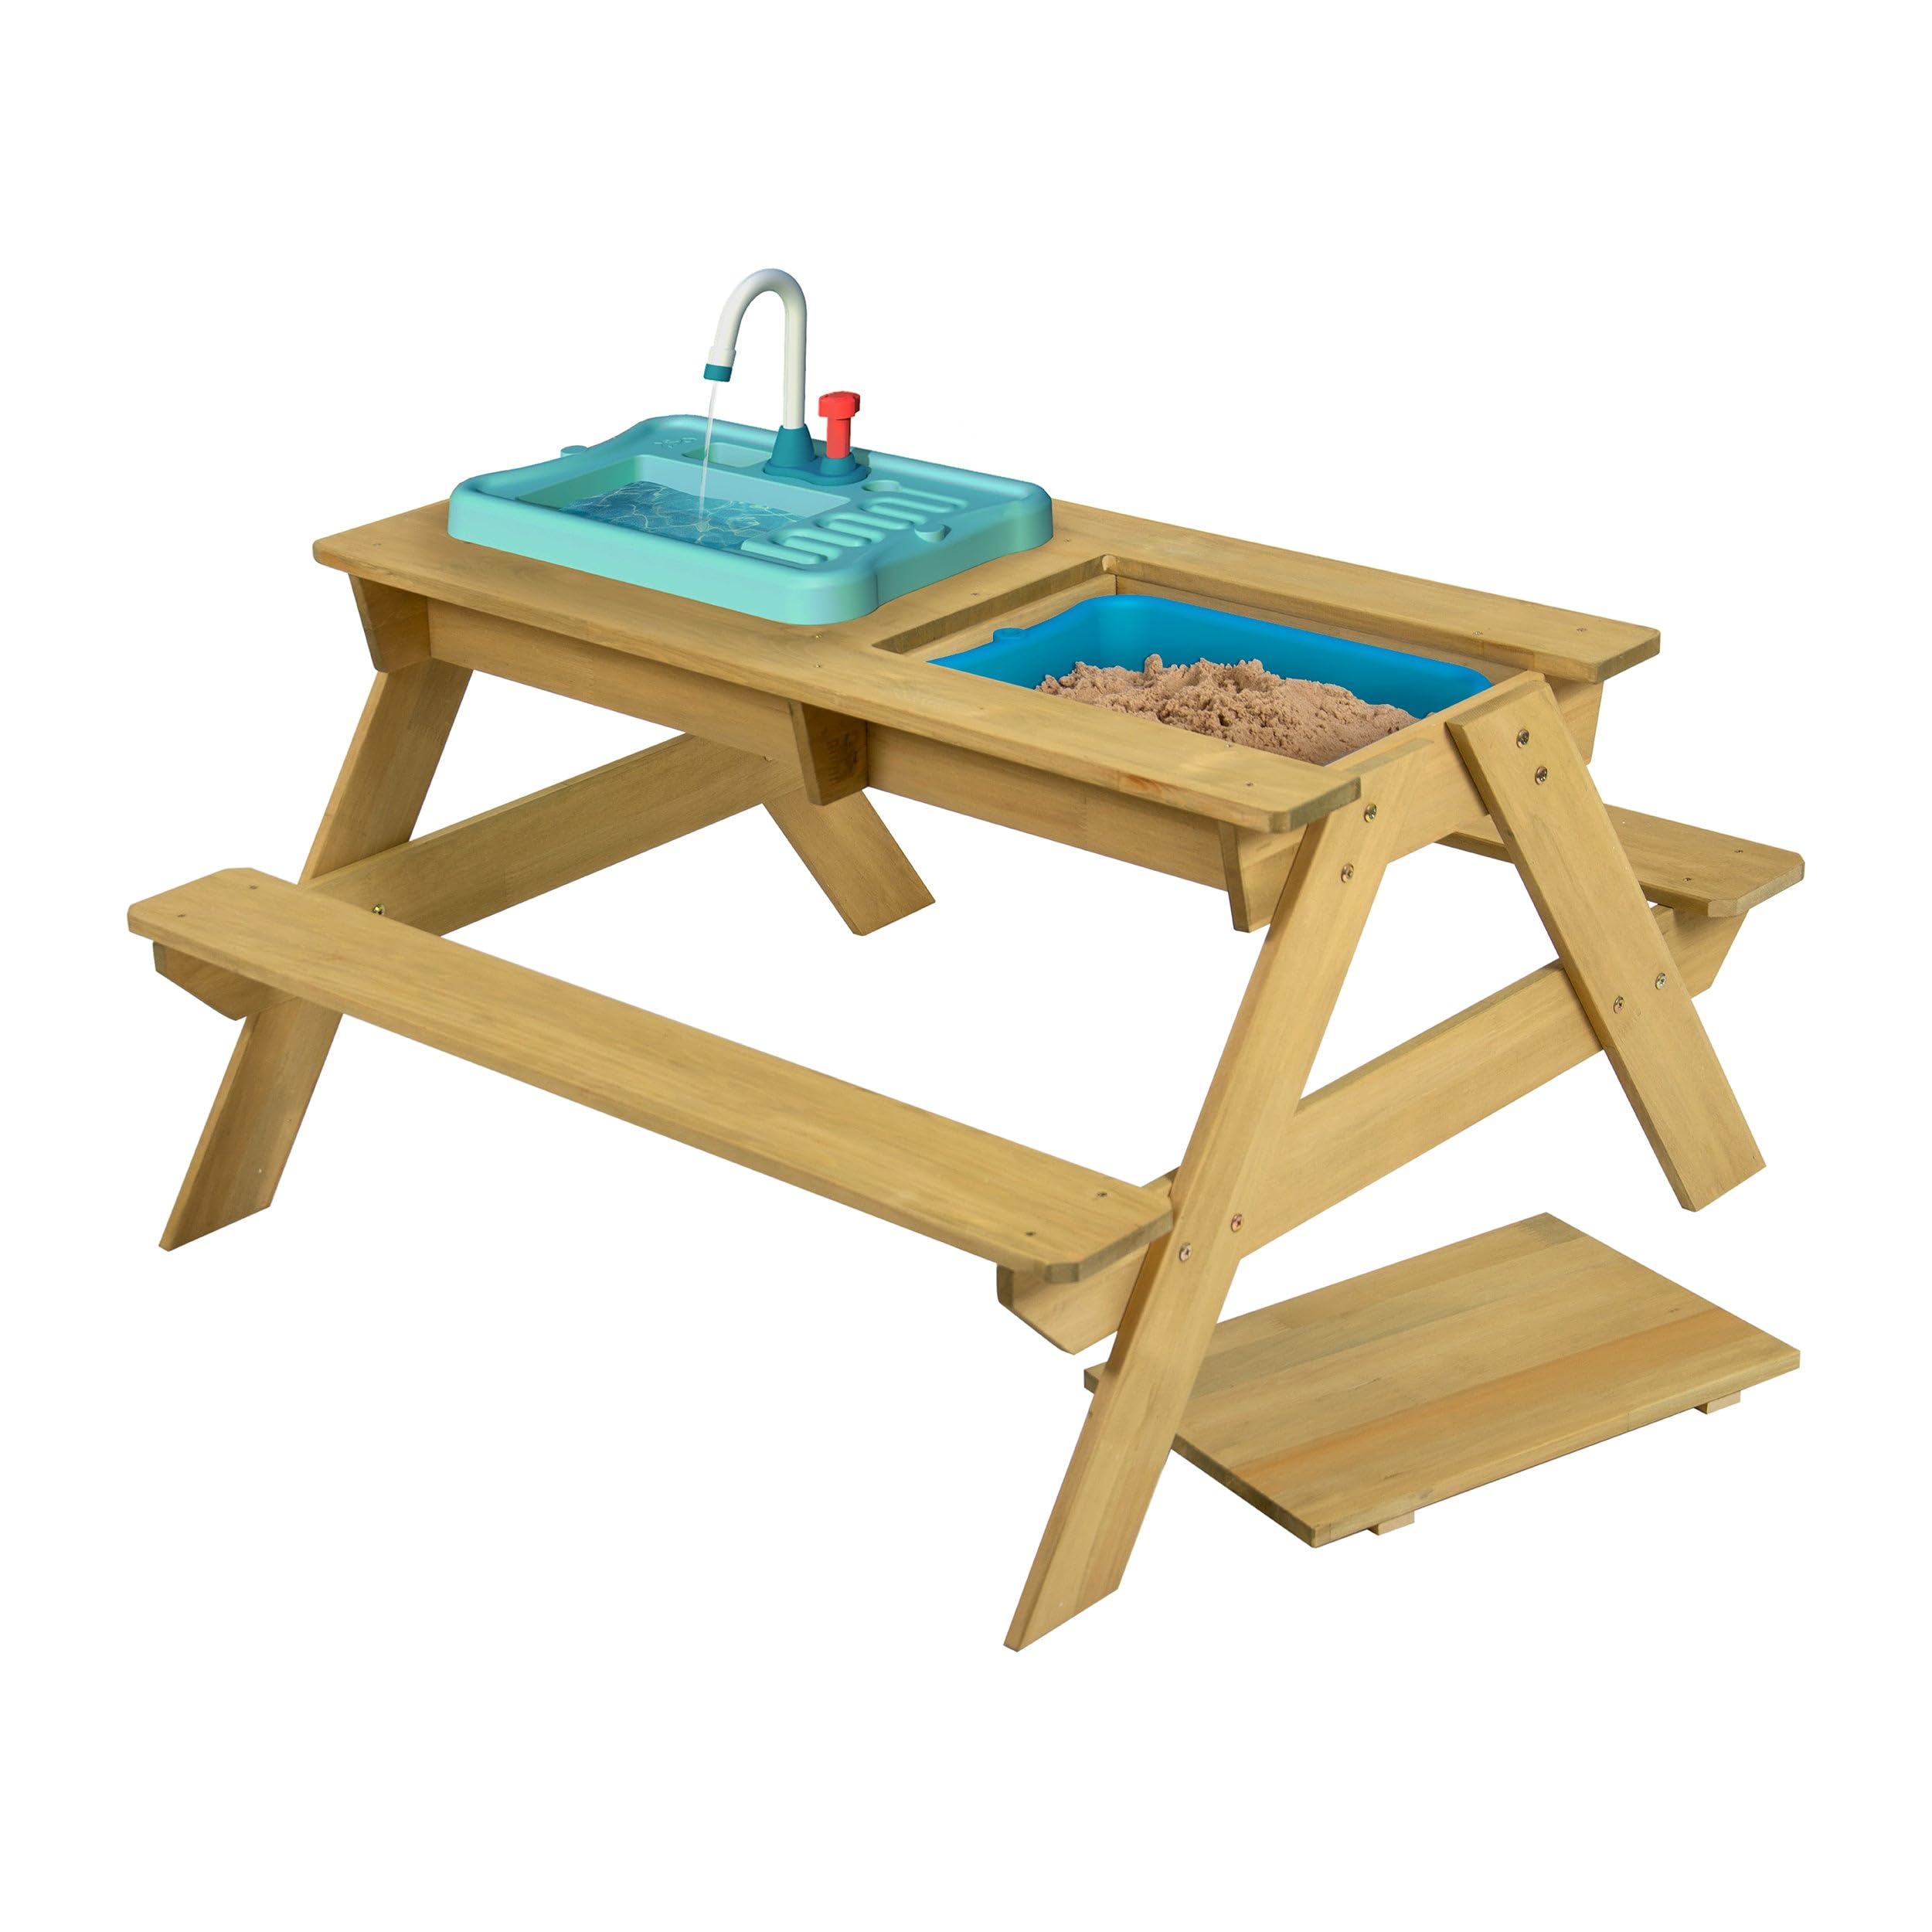 TP Toys TP617 Splash and Play hölzerner Picknicktisch mit funktionierendem Wasserhahn, Schüssel für Sand-und Wasserspiele, Mehrzweck-Holztisch für Kinder ab 2 Jahren 130 x 137 x 138 cm, Holzfarben